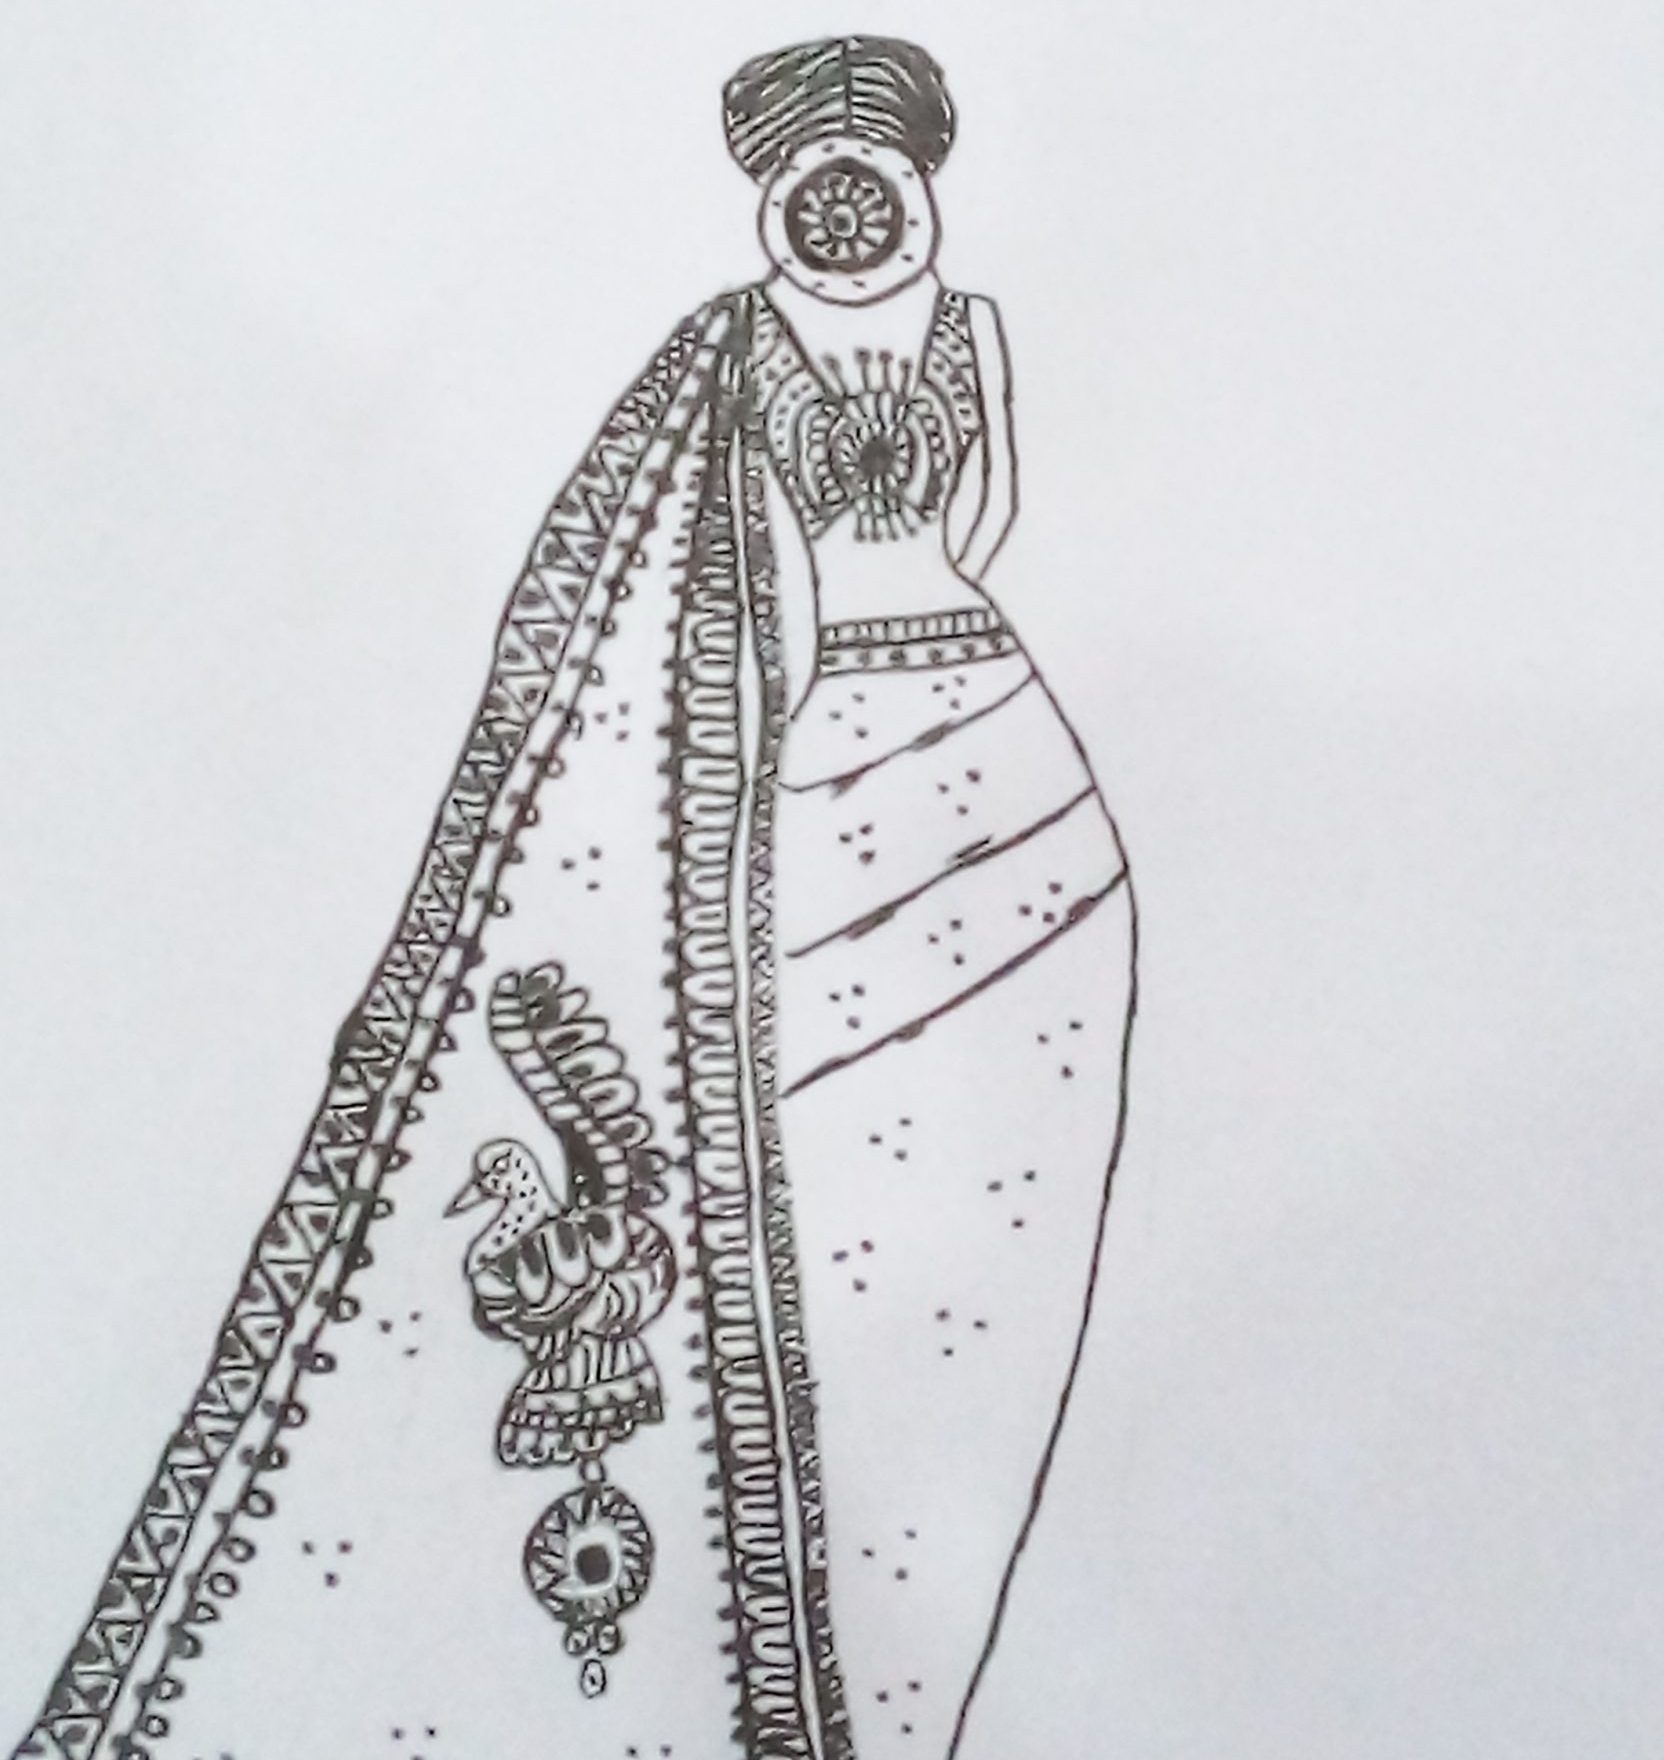 Image depicting Explore Mandala Art by Haripriya Harish